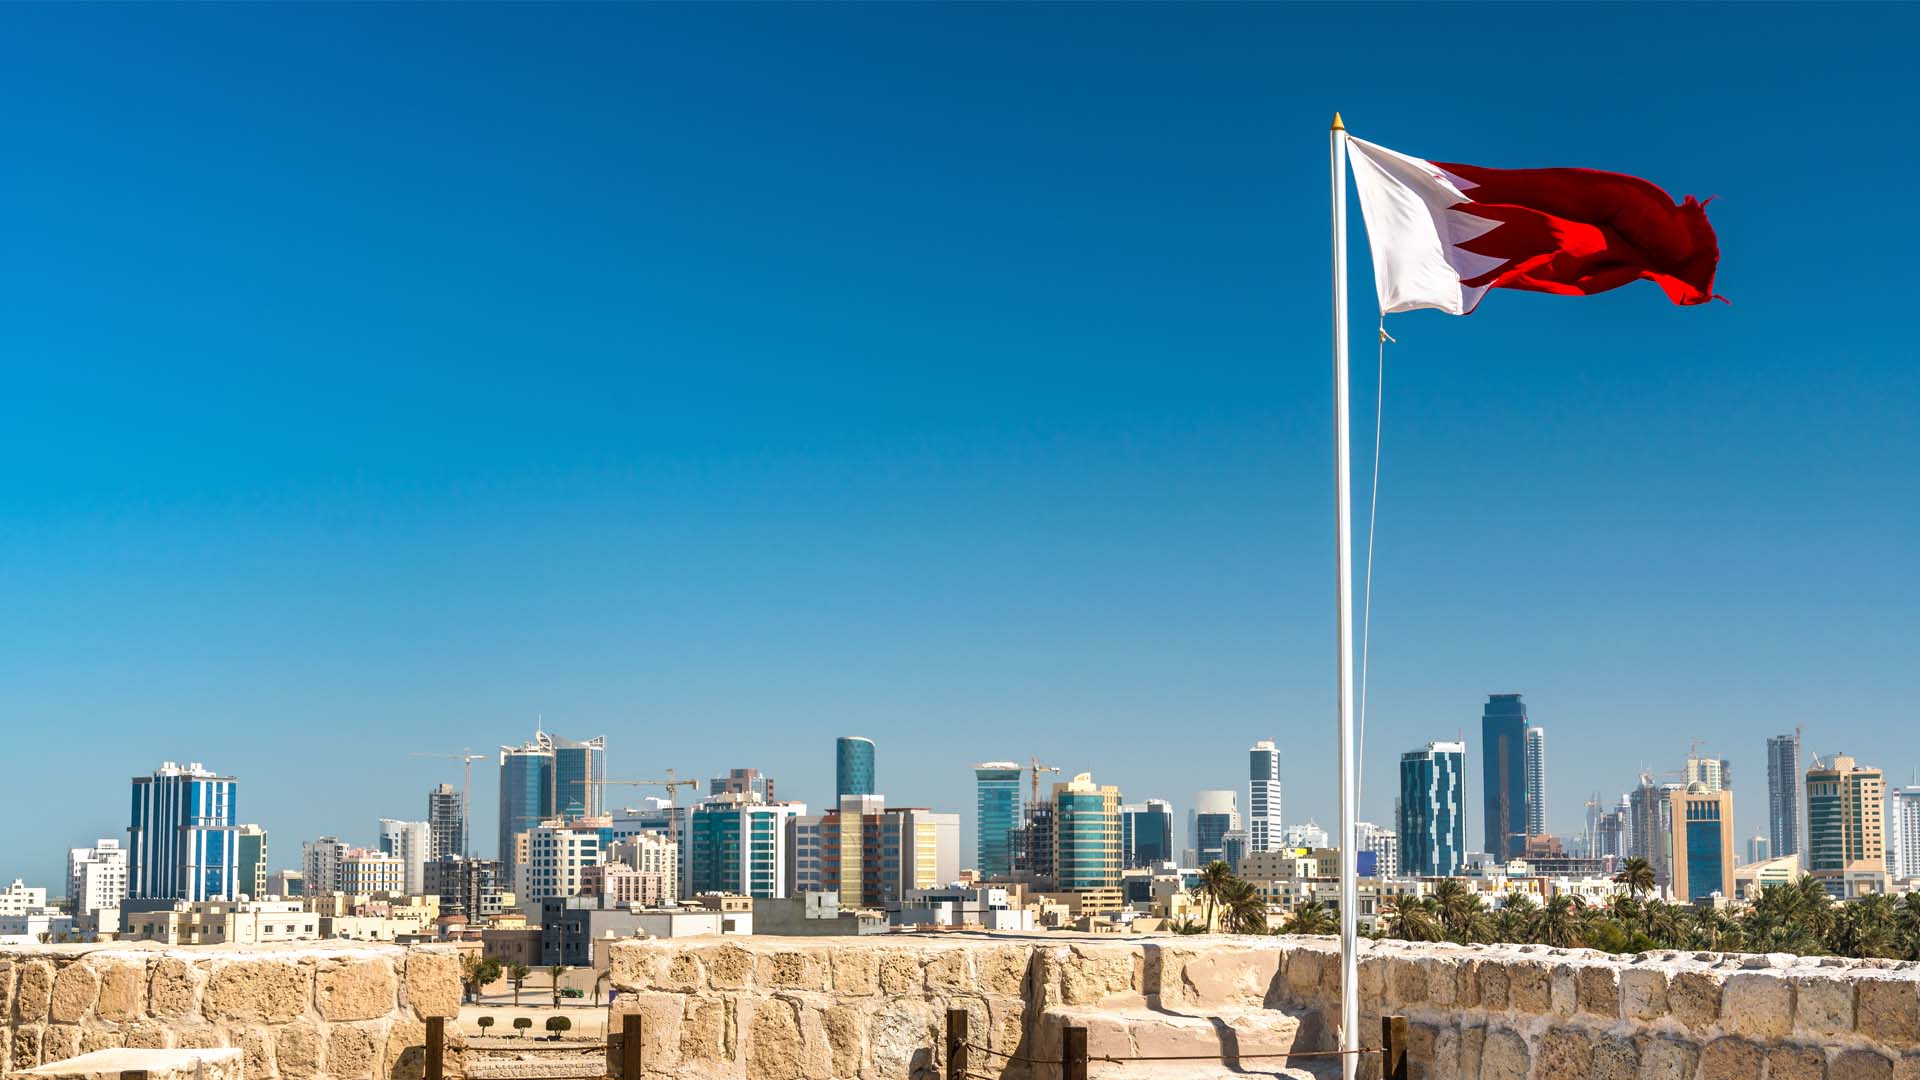 هيئة البحرين للسياحة: إغلاق مطعم سياحي منع دخول فتاة محجبة